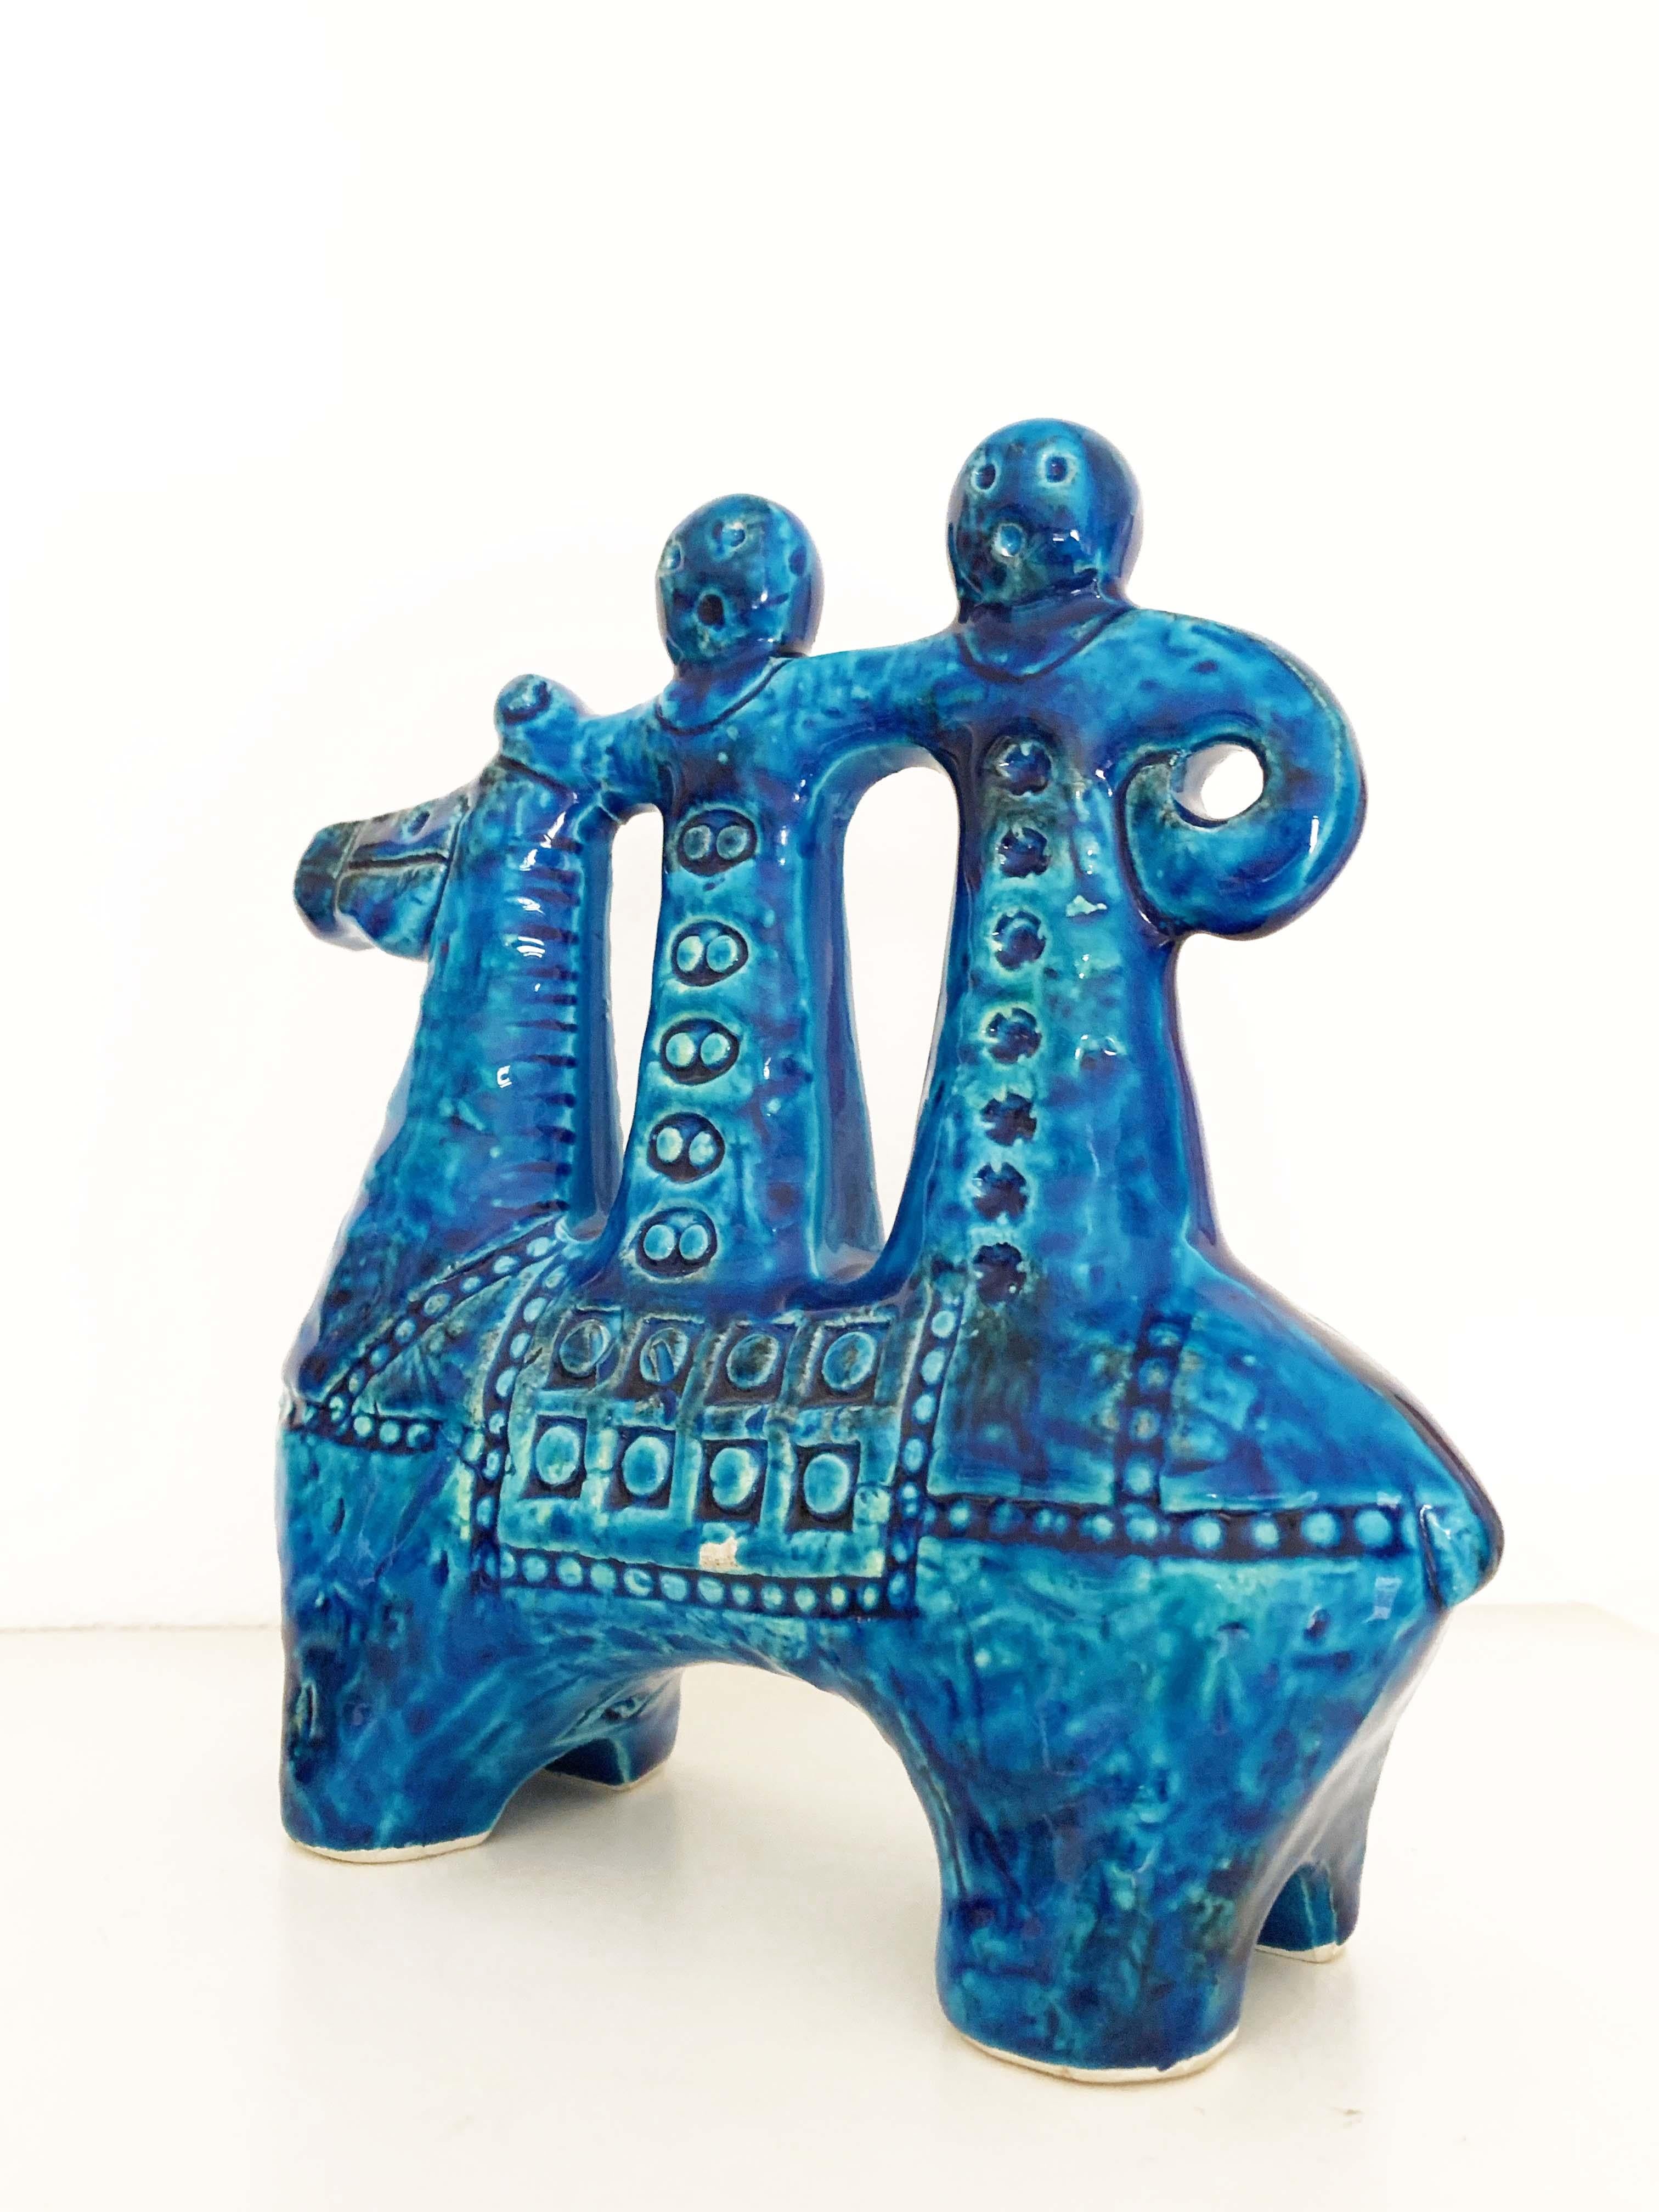 Aldo Londi for Bitossi Rimini Blue Figurine, Horse, Rider, Cavallerizzo Pottery 1